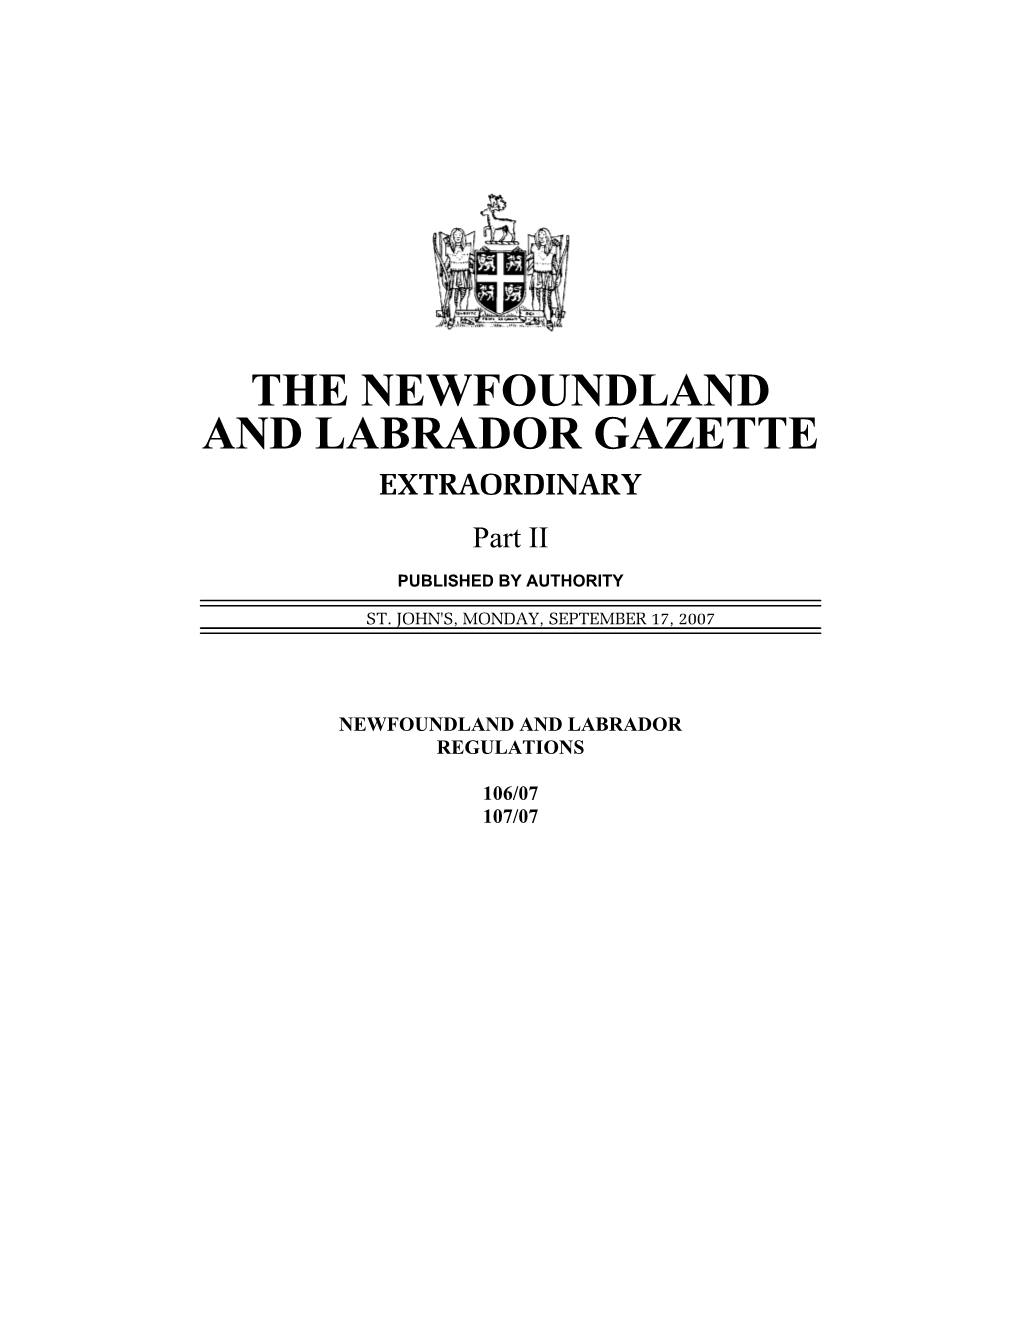 The Newfoundland and Labrador Extraordinary Gazette Sept. 17/07